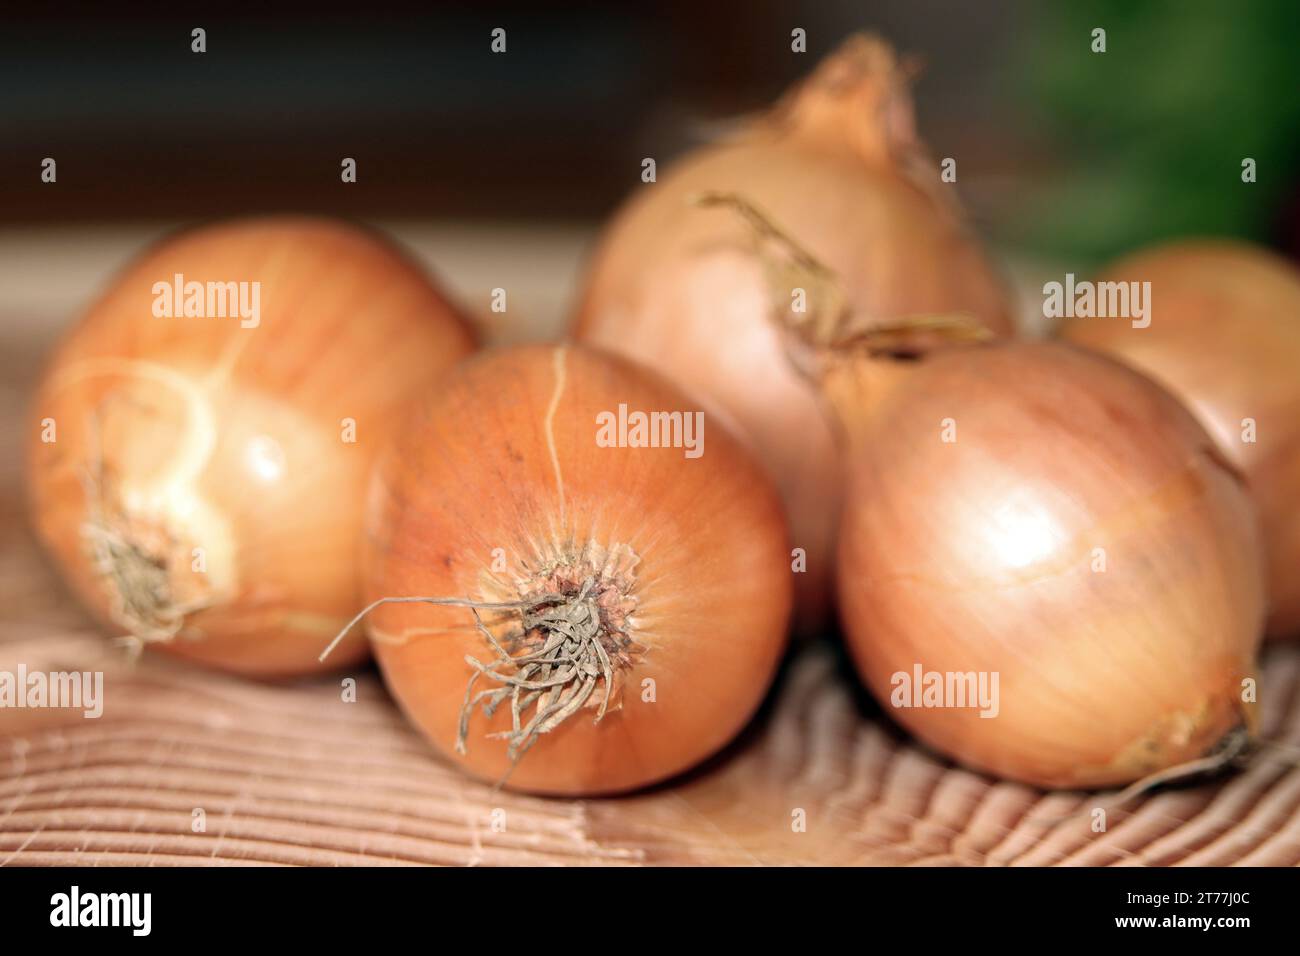 Garden onion, Bulb Onion, Common Onion (Allium cepa), onions in a basket Stock Photo